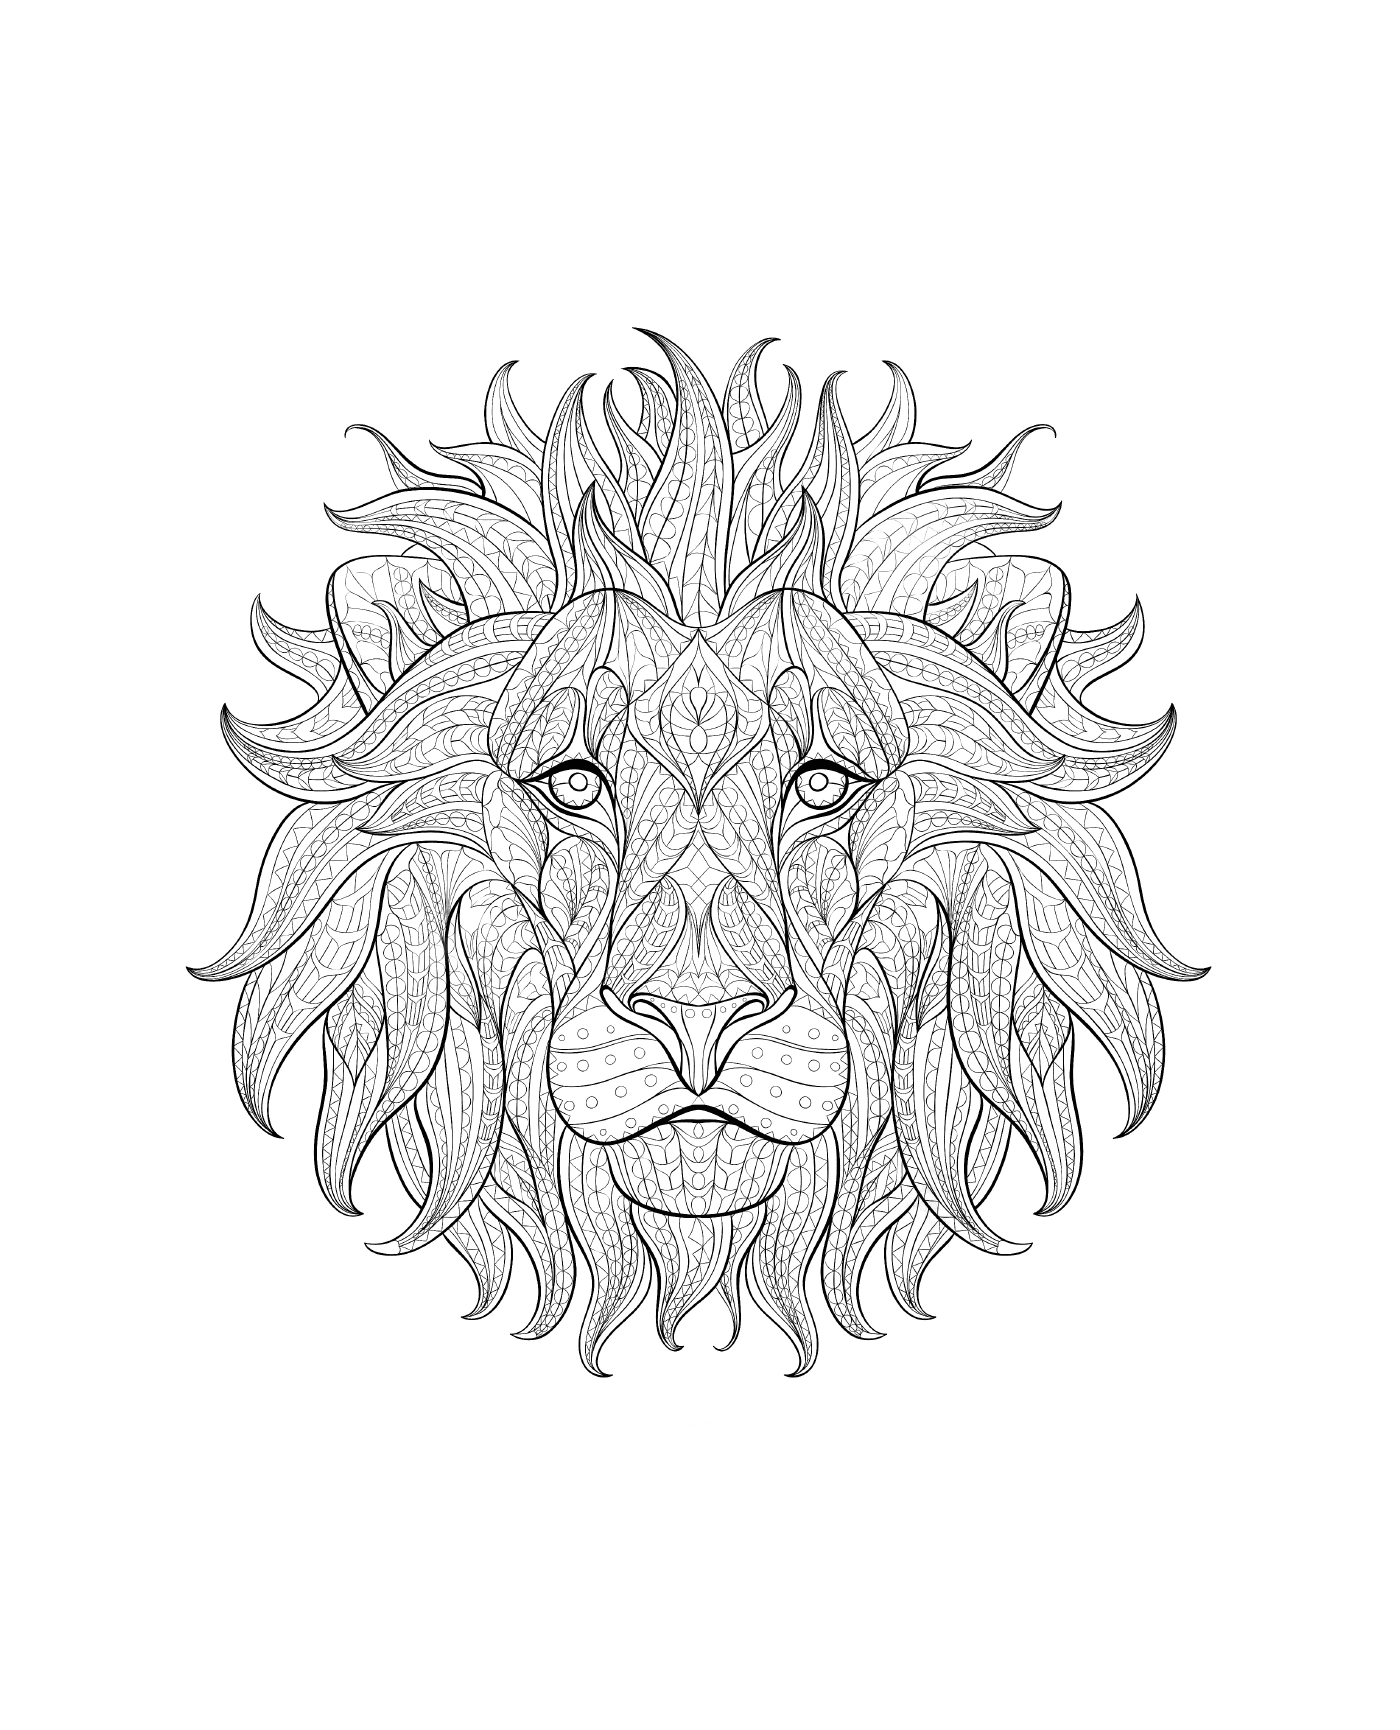  A lion's head 